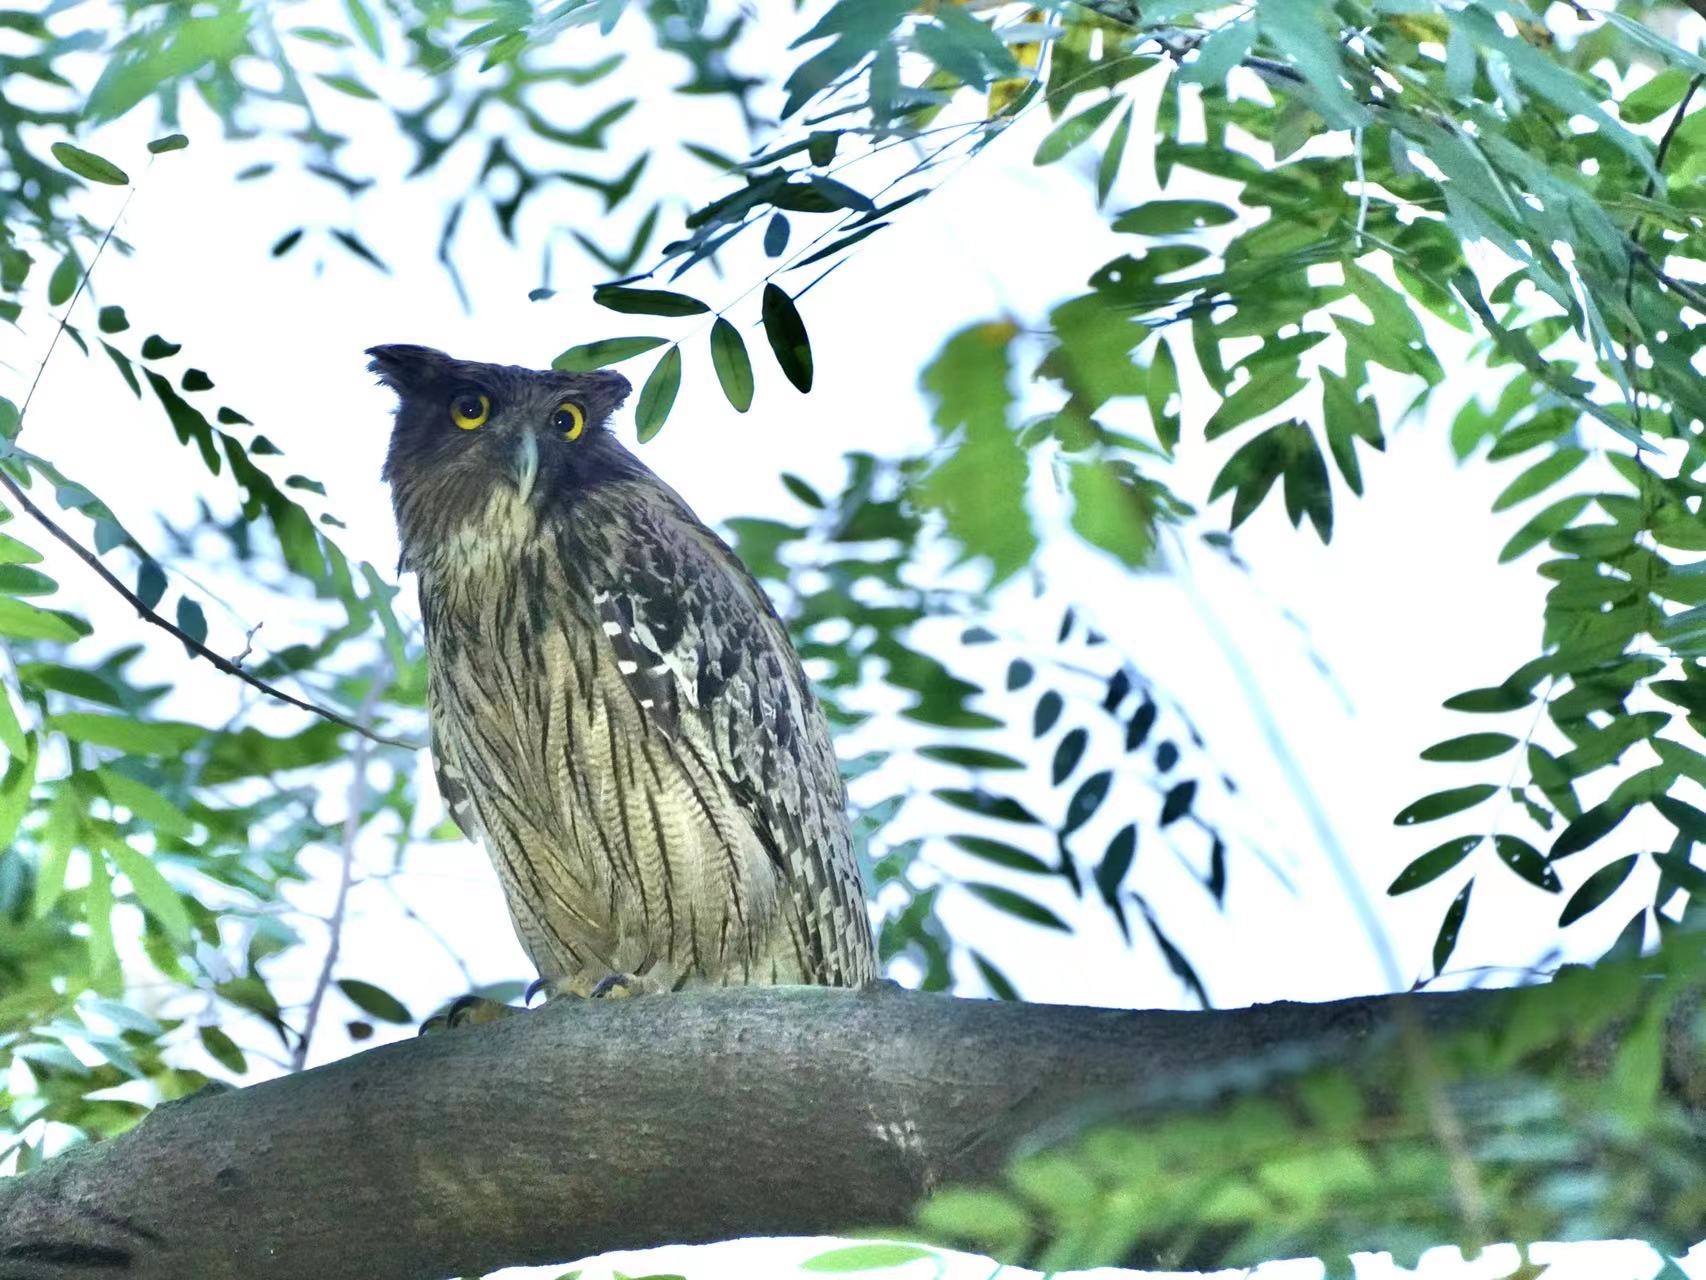 Birdwatcher captures brown fish owls on camera in Shenzhen